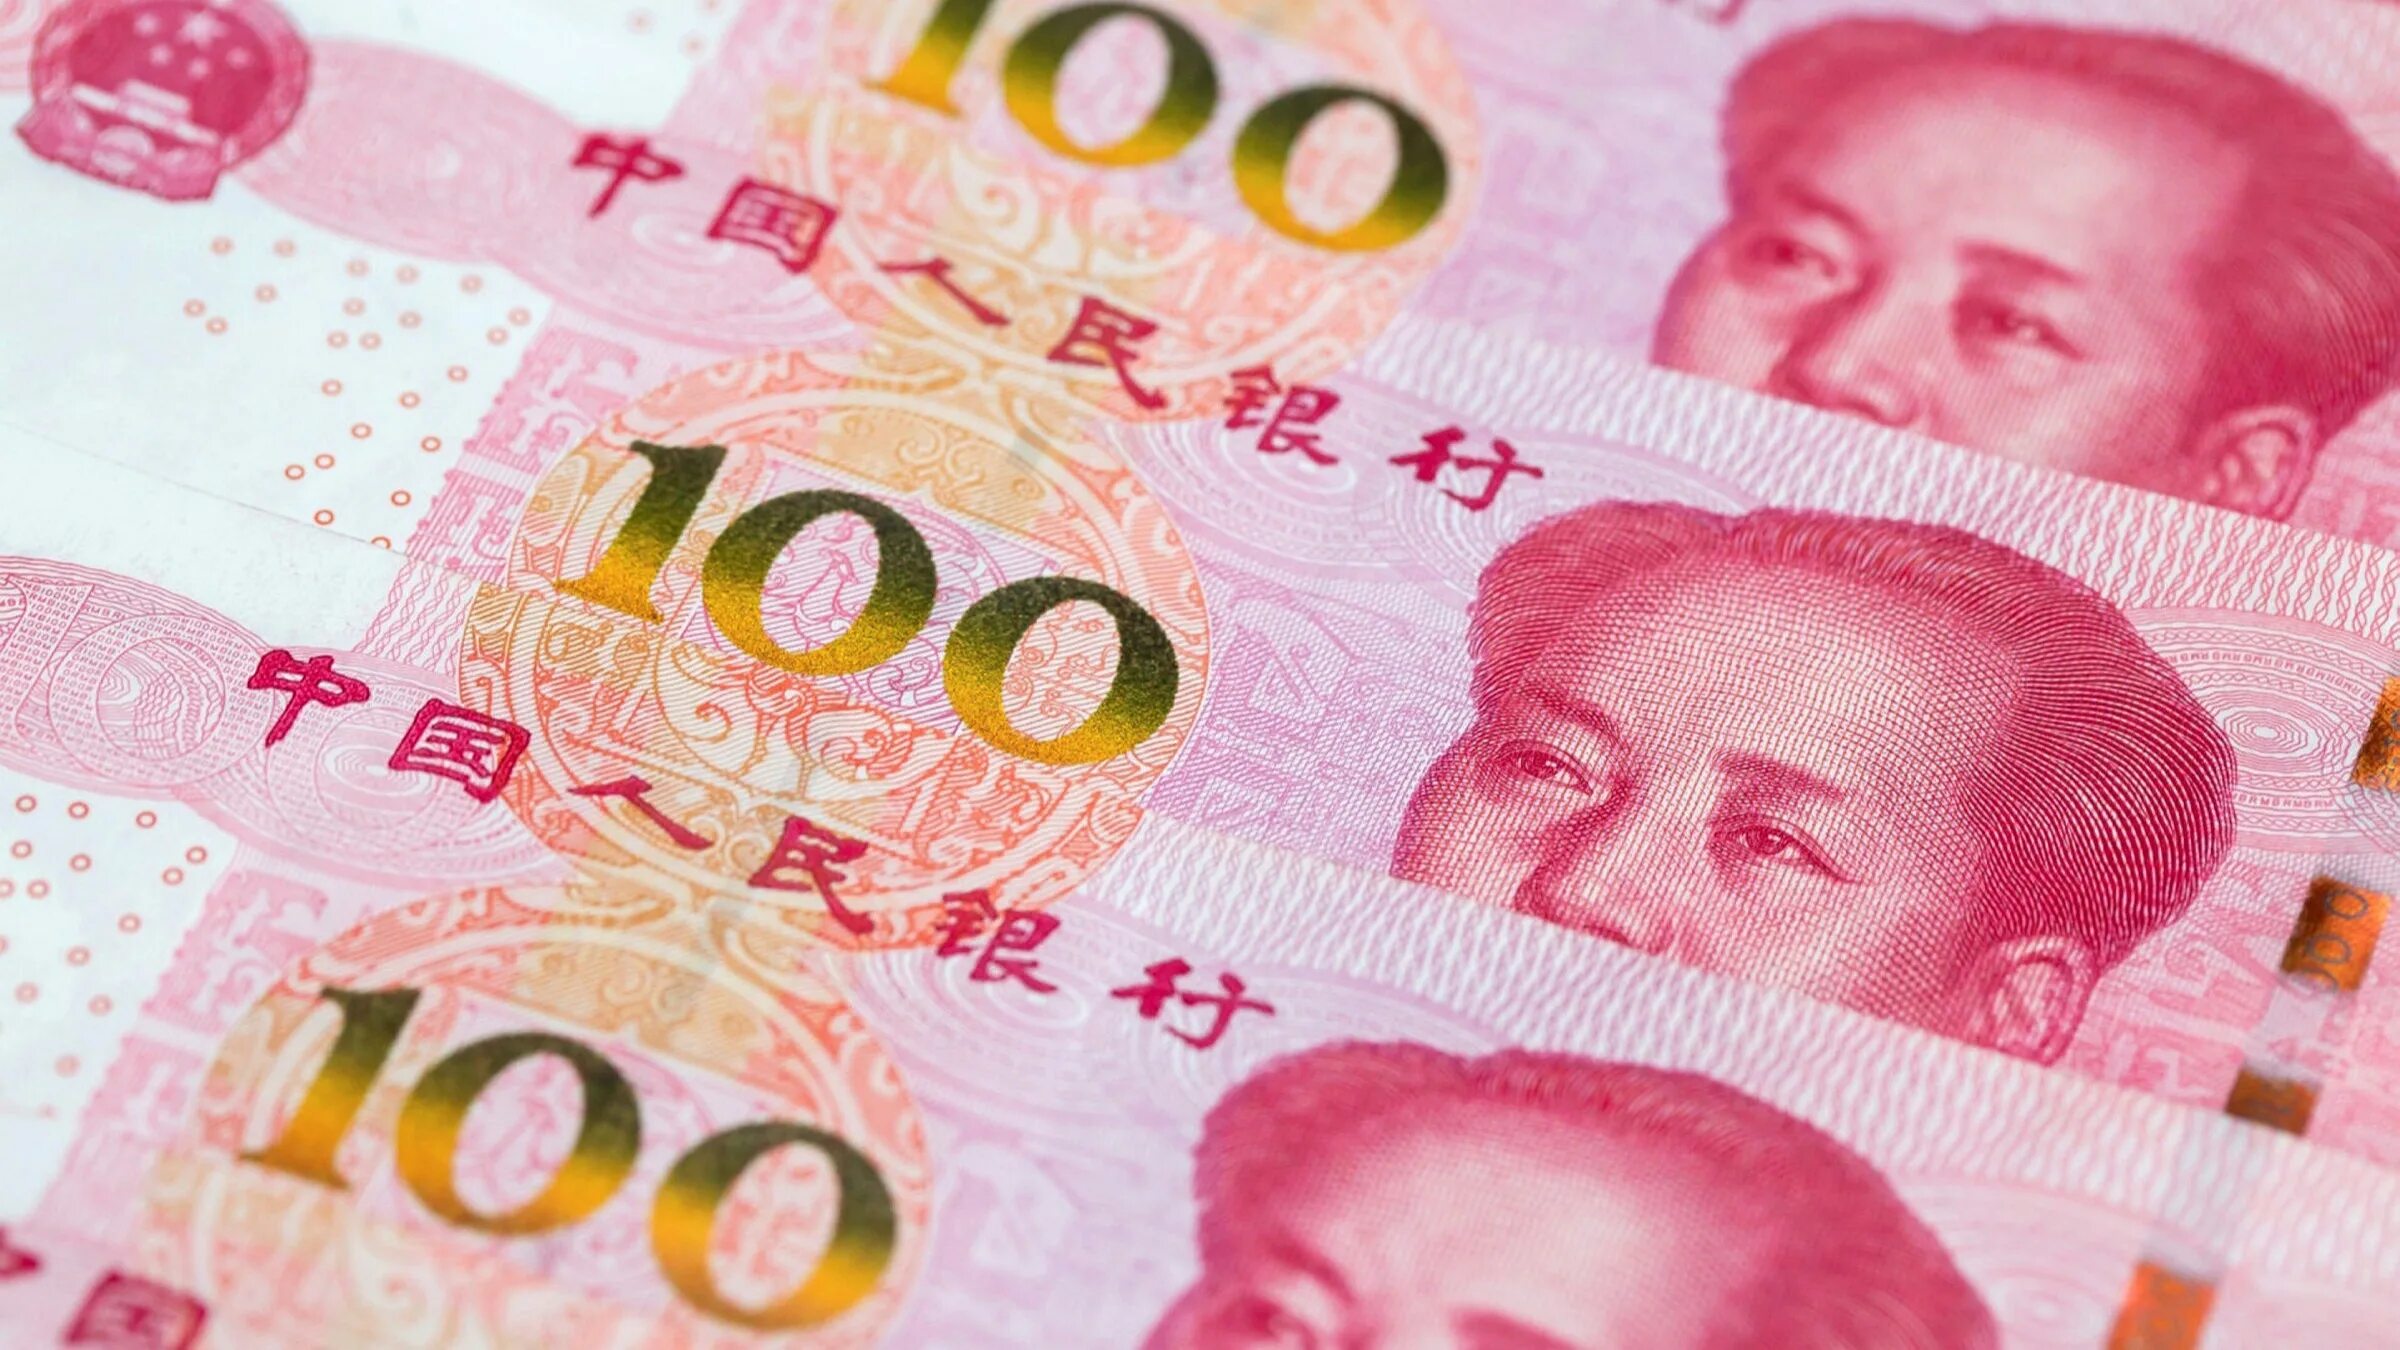 100 Юаней. Китайская валюта. Китайский юань. Валюта Китая. 25 юаней в тенге